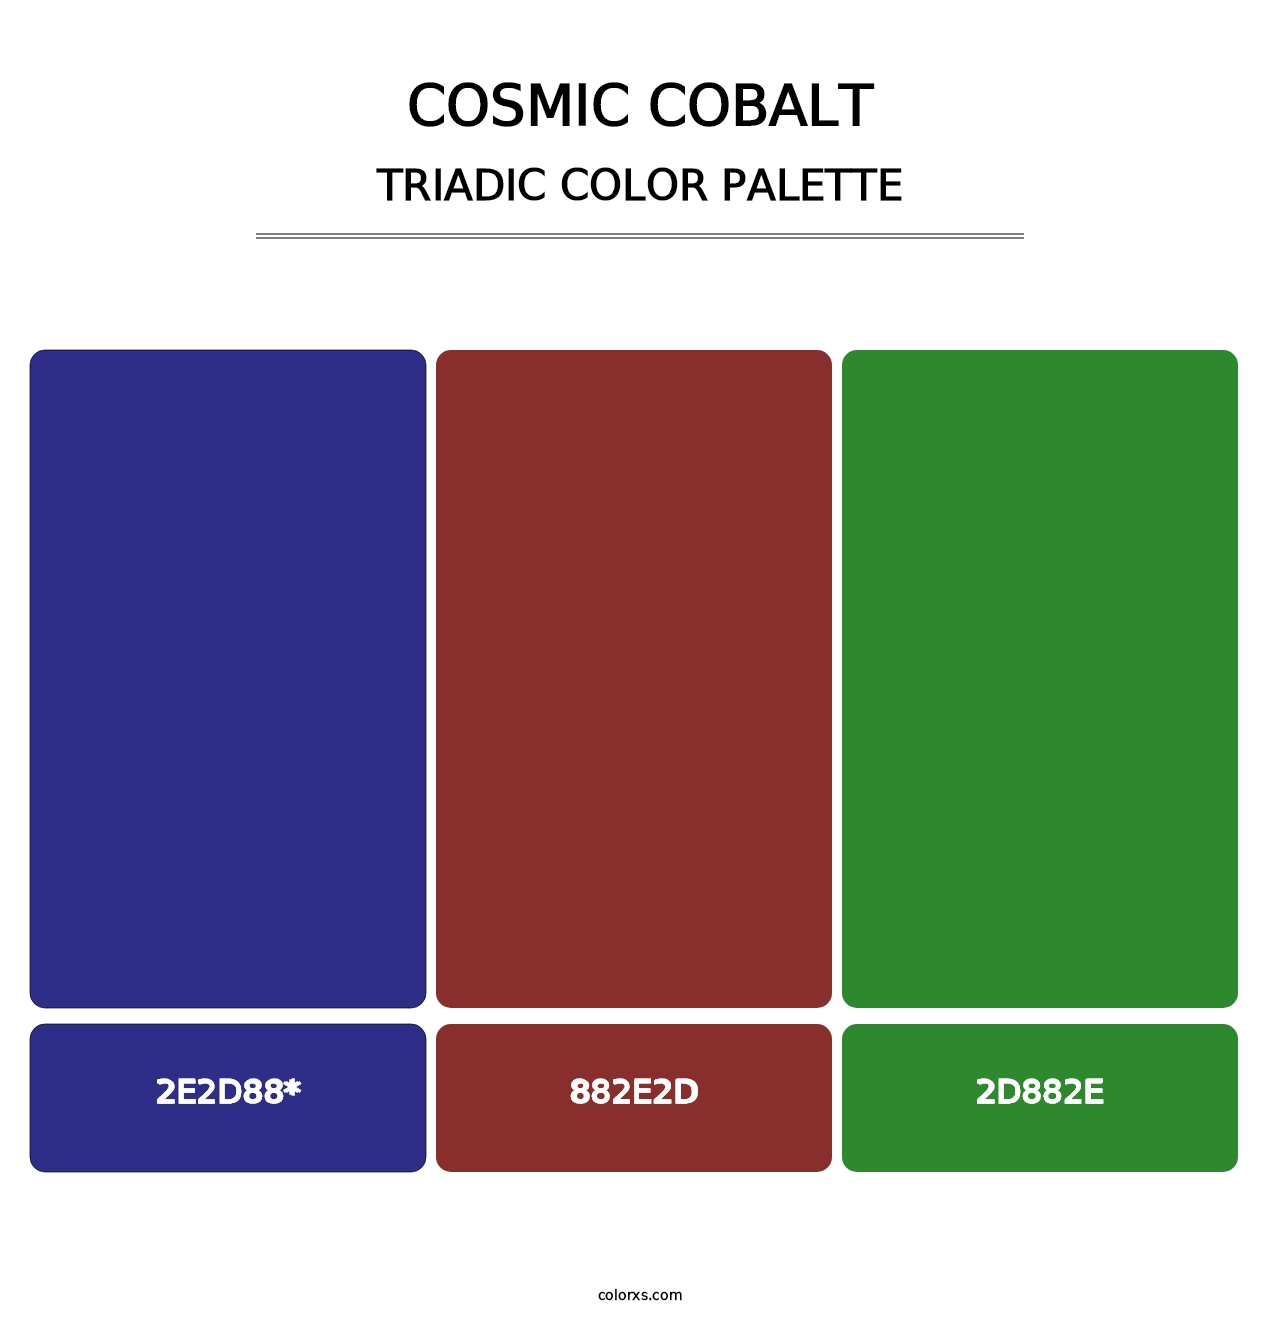 Cosmic Cobalt - Triadic Color Palette